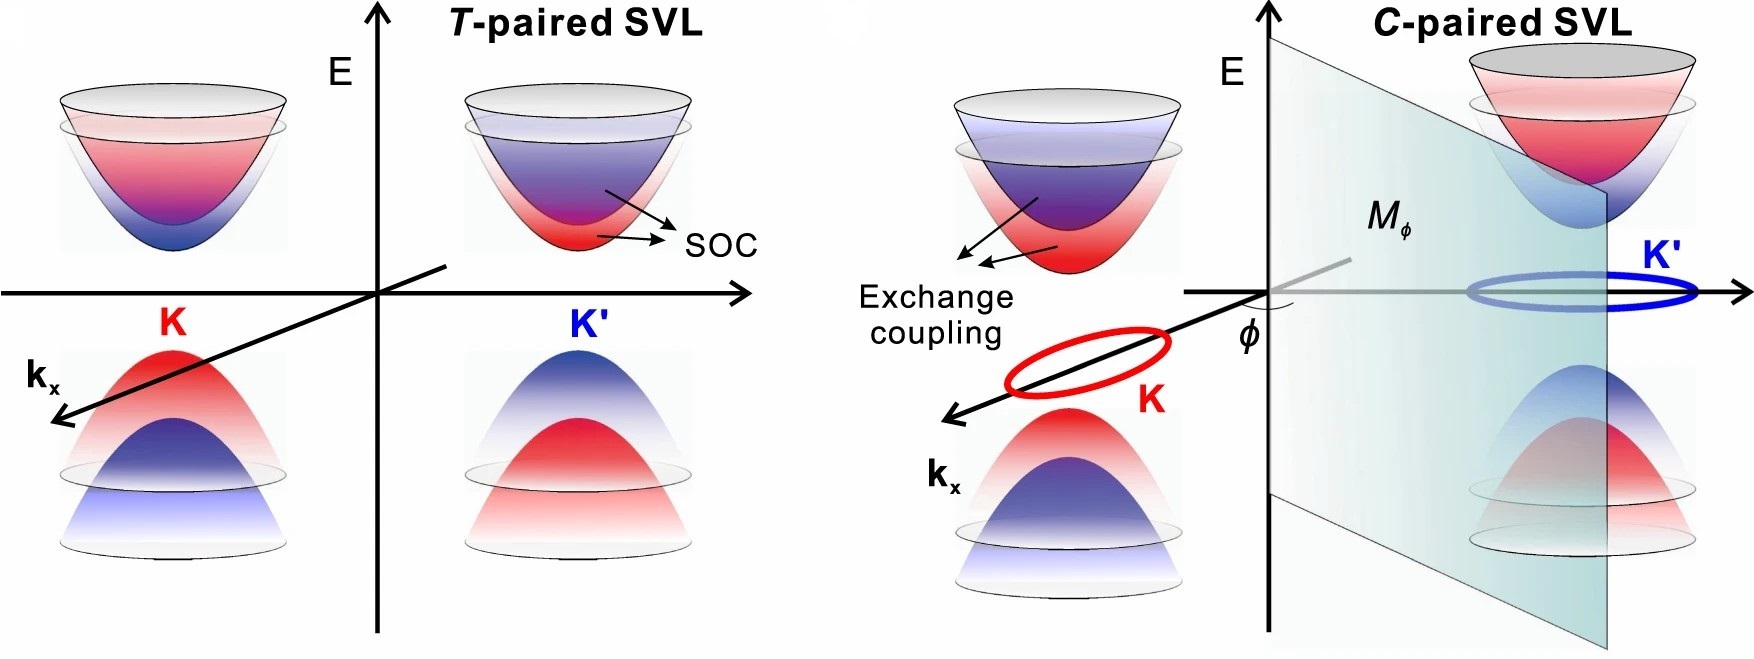 图 2 (a) T-paired SVL 和 (b) C-paired SVL 的自旋劈裂能带。